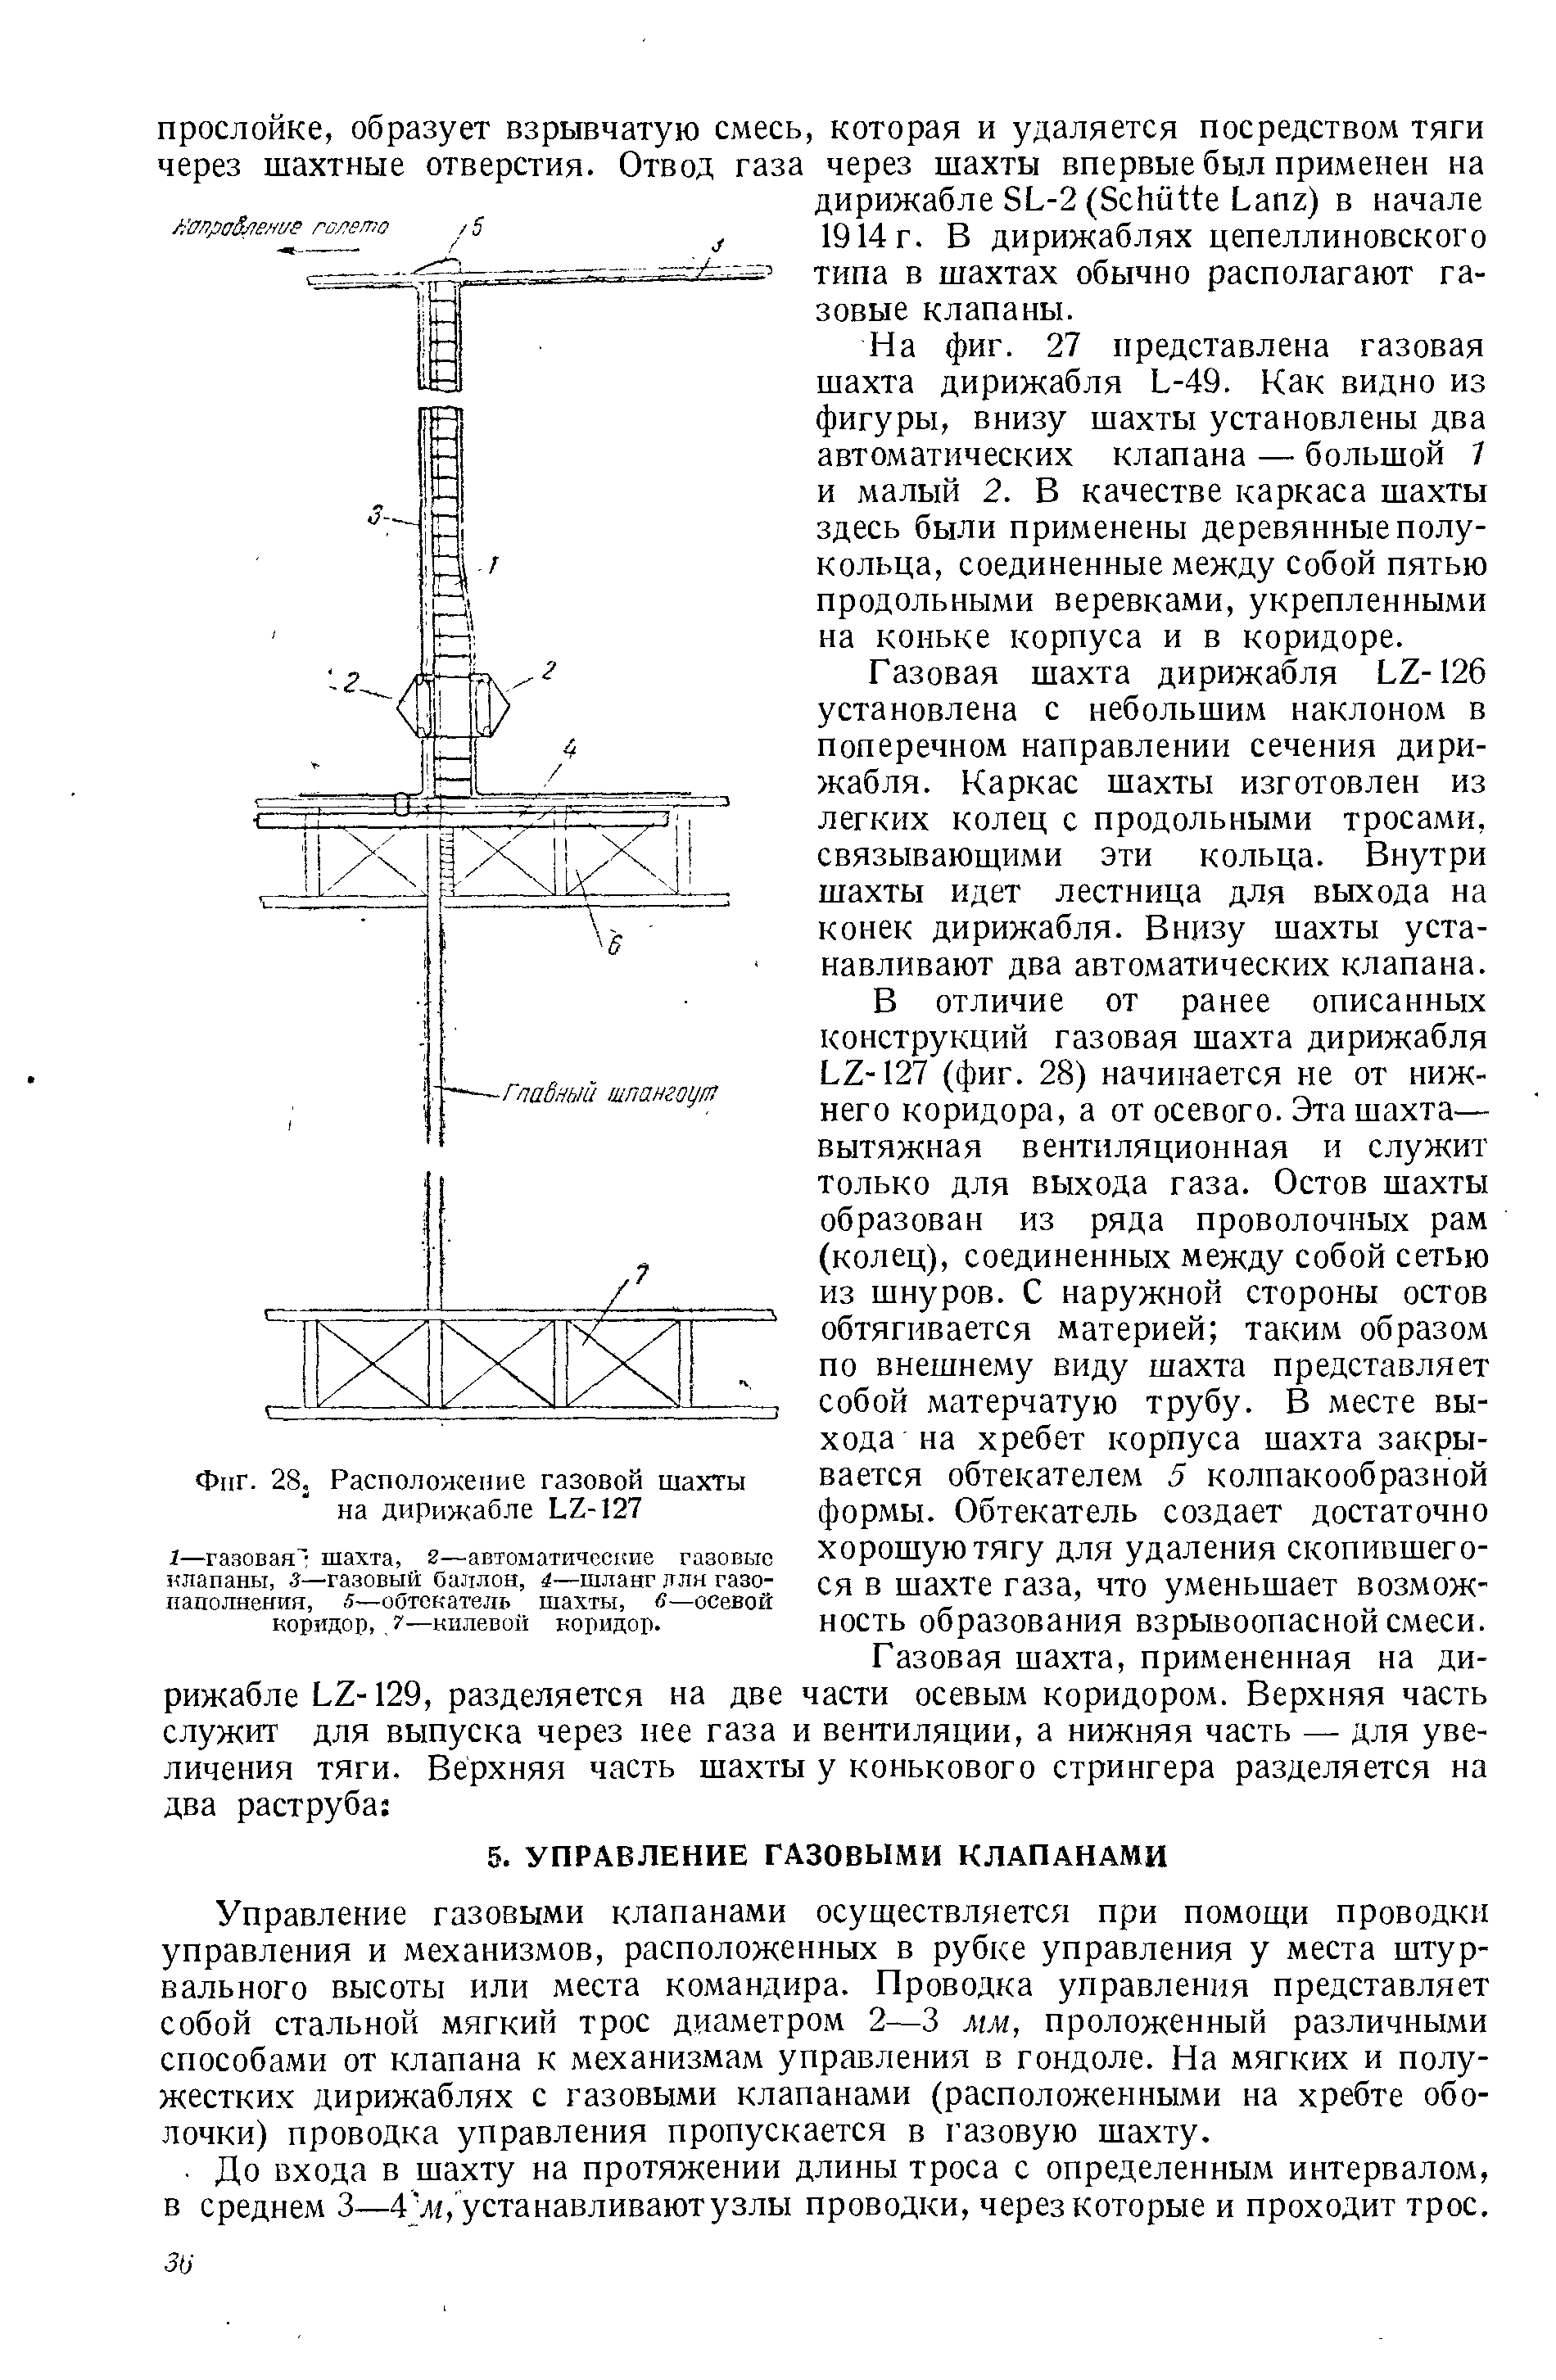 Фиг. 28. Расположение газовой шахты на дирижабле Ь2-127
